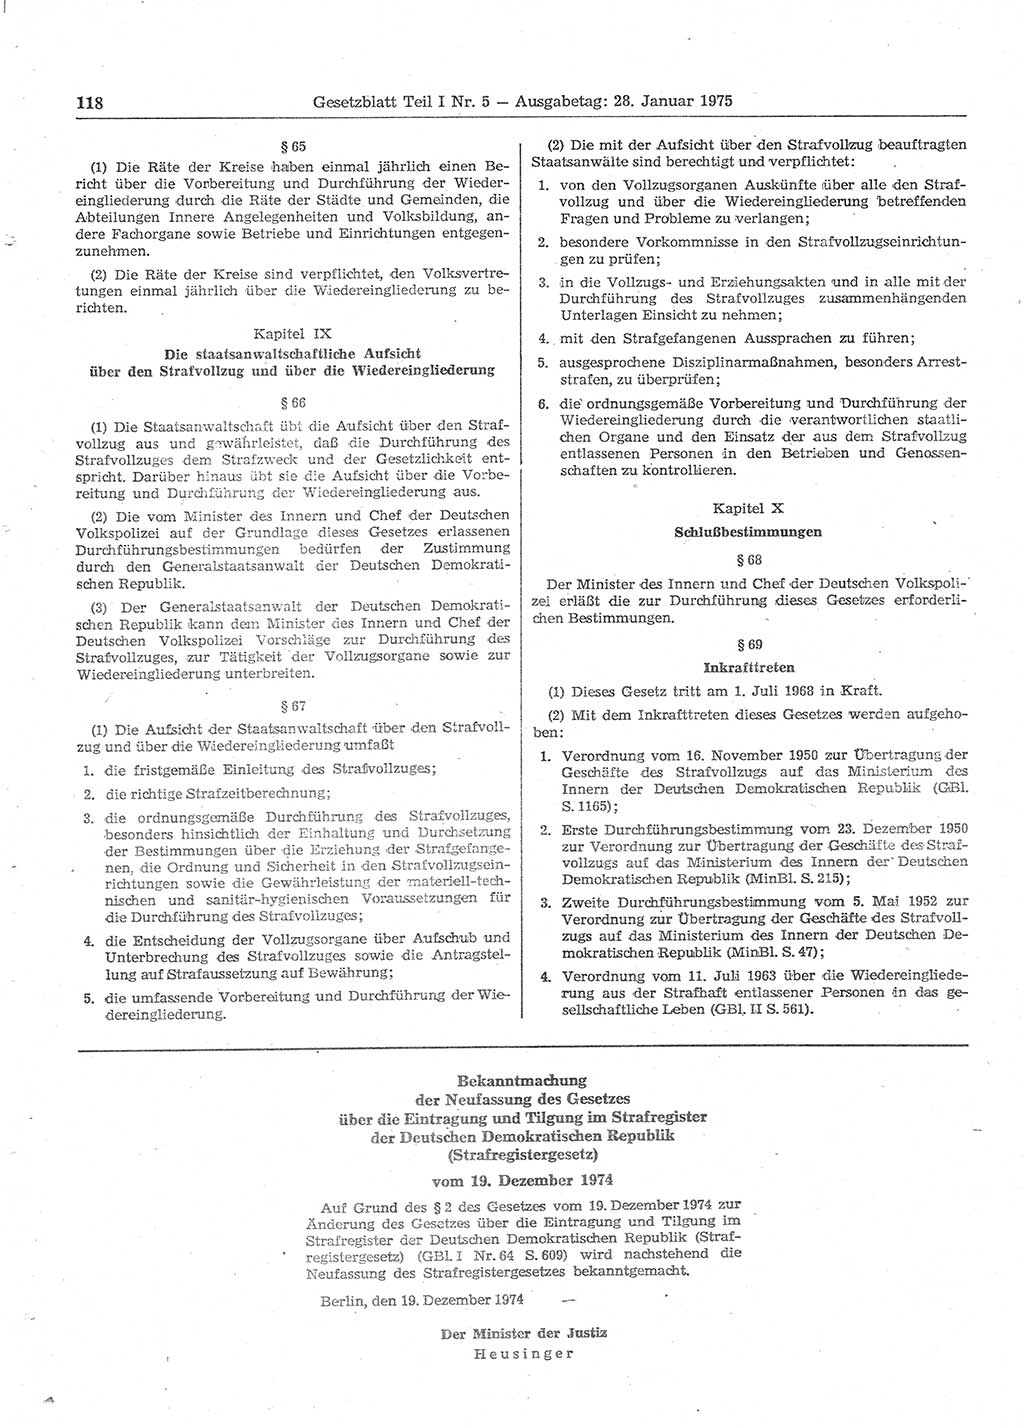 Gesetzblatt (GBl.) der Deutschen Demokratischen Republik (DDR) Teil Ⅰ 1975, Seite 118 (GBl. DDR Ⅰ 1975, S. 118)